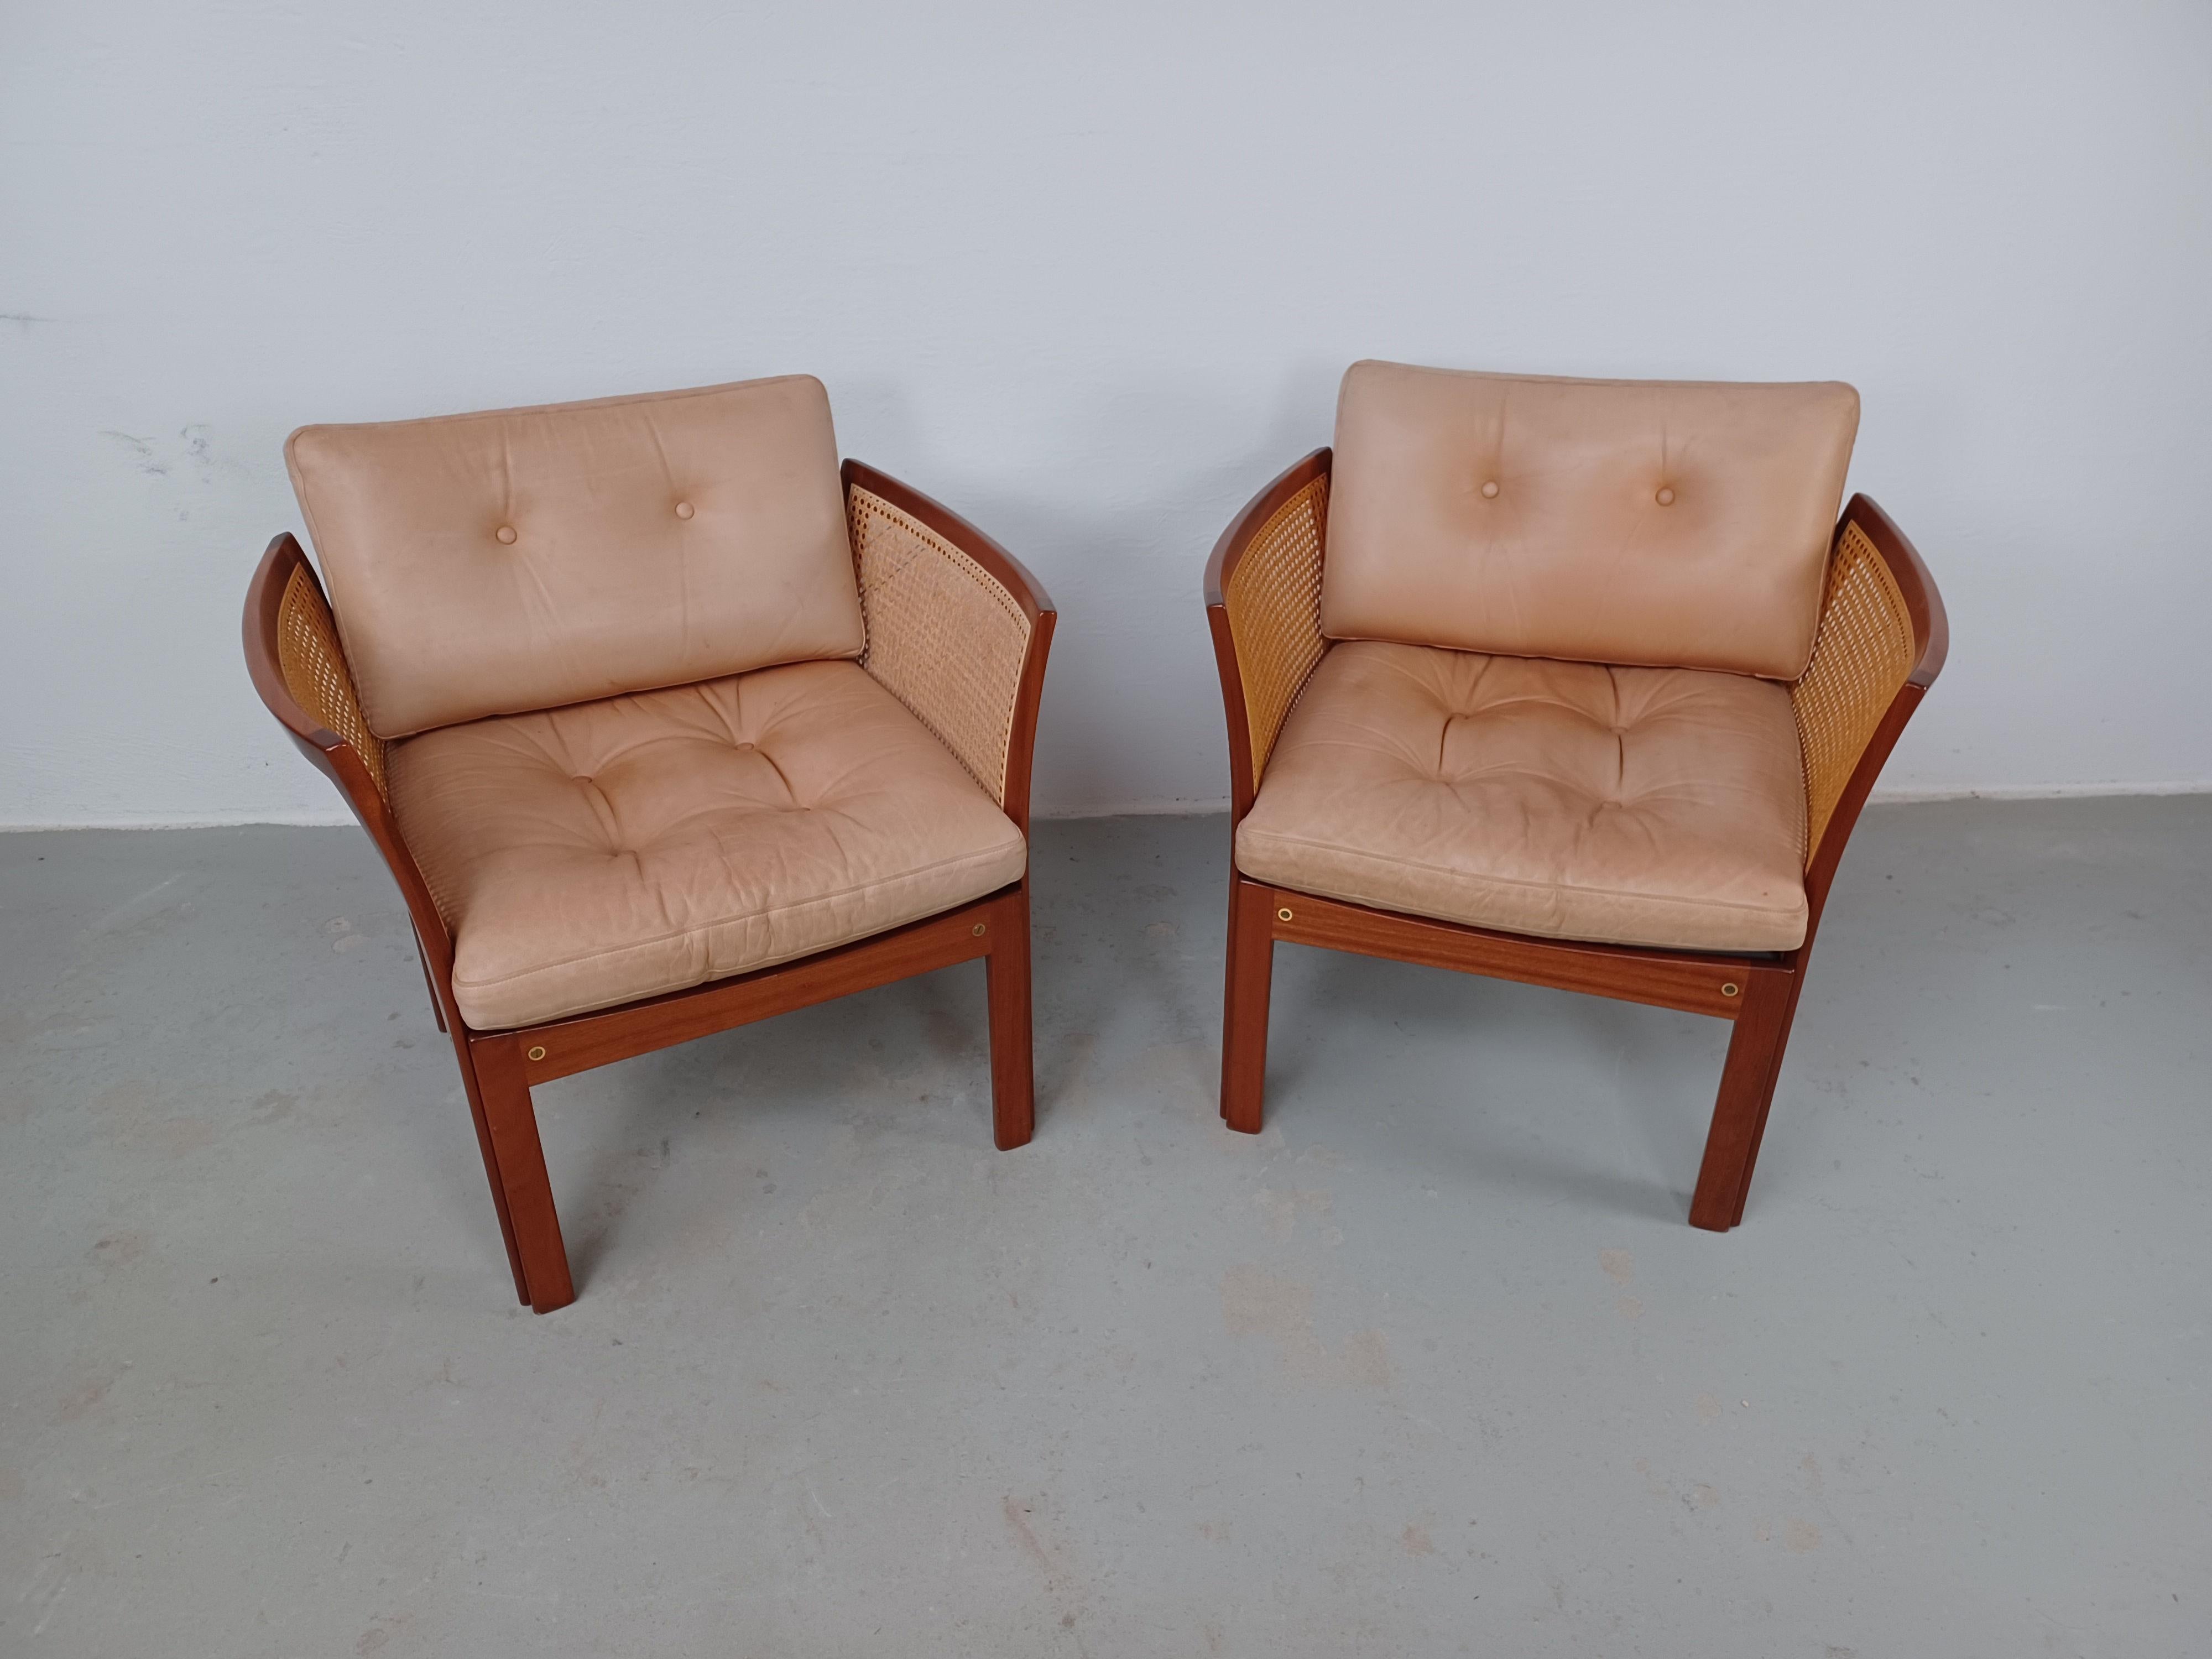 1960 - Ensemble de deux fauteuils Illum Vikkelso Plexus en bois de rose par CFC Silkeborg

La série de chaises Plexus, composée d'une chaise longue, d'un canapé, d'une table basse et d'une table d'appoint, a été conçue par Illum Wikkelsø dans les